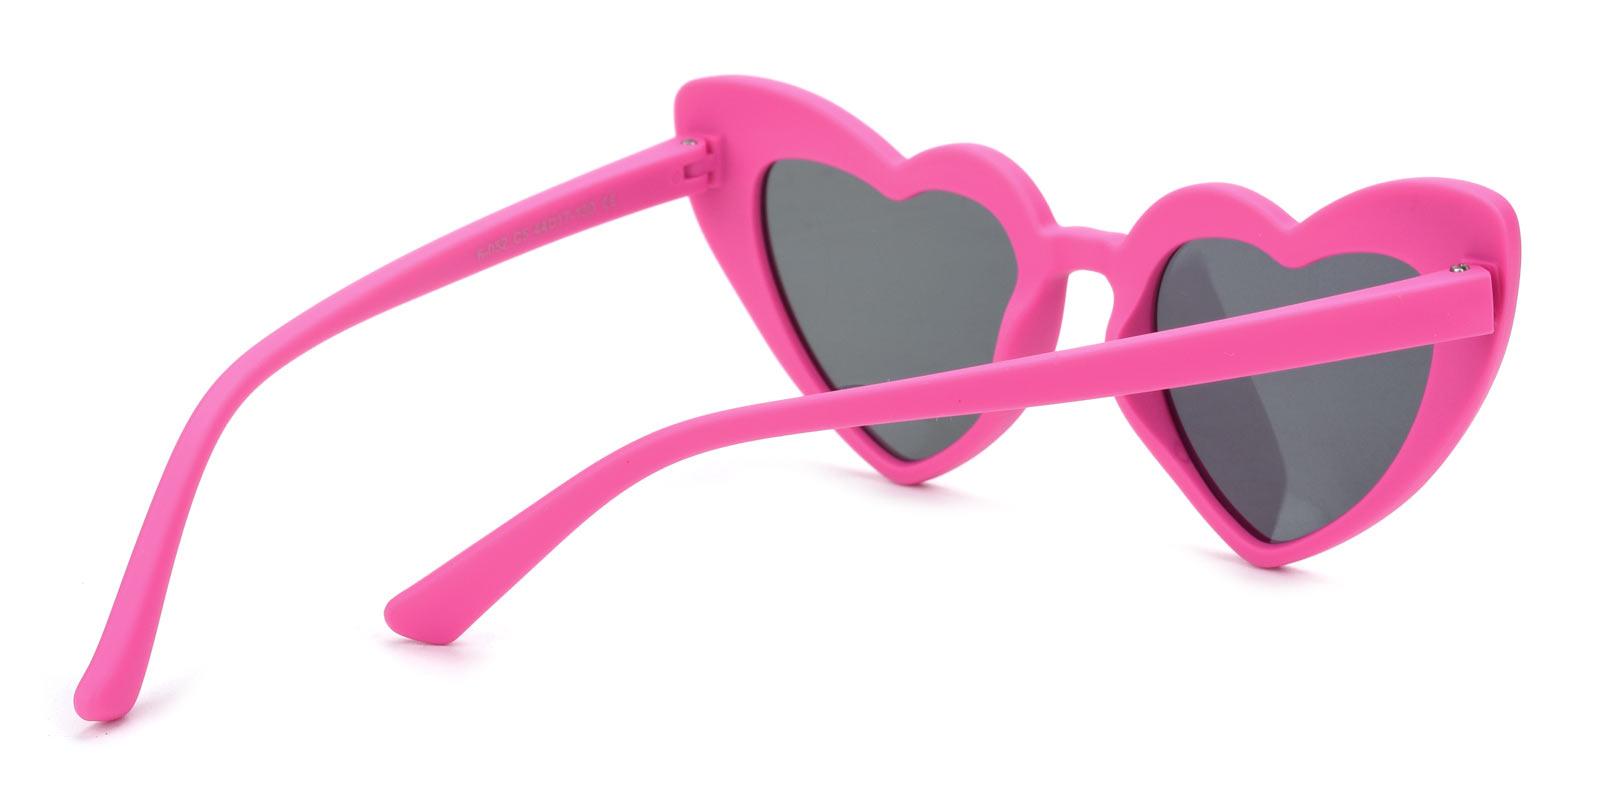 Retta-Pink-Geometric-TR-Sunglasses-detail